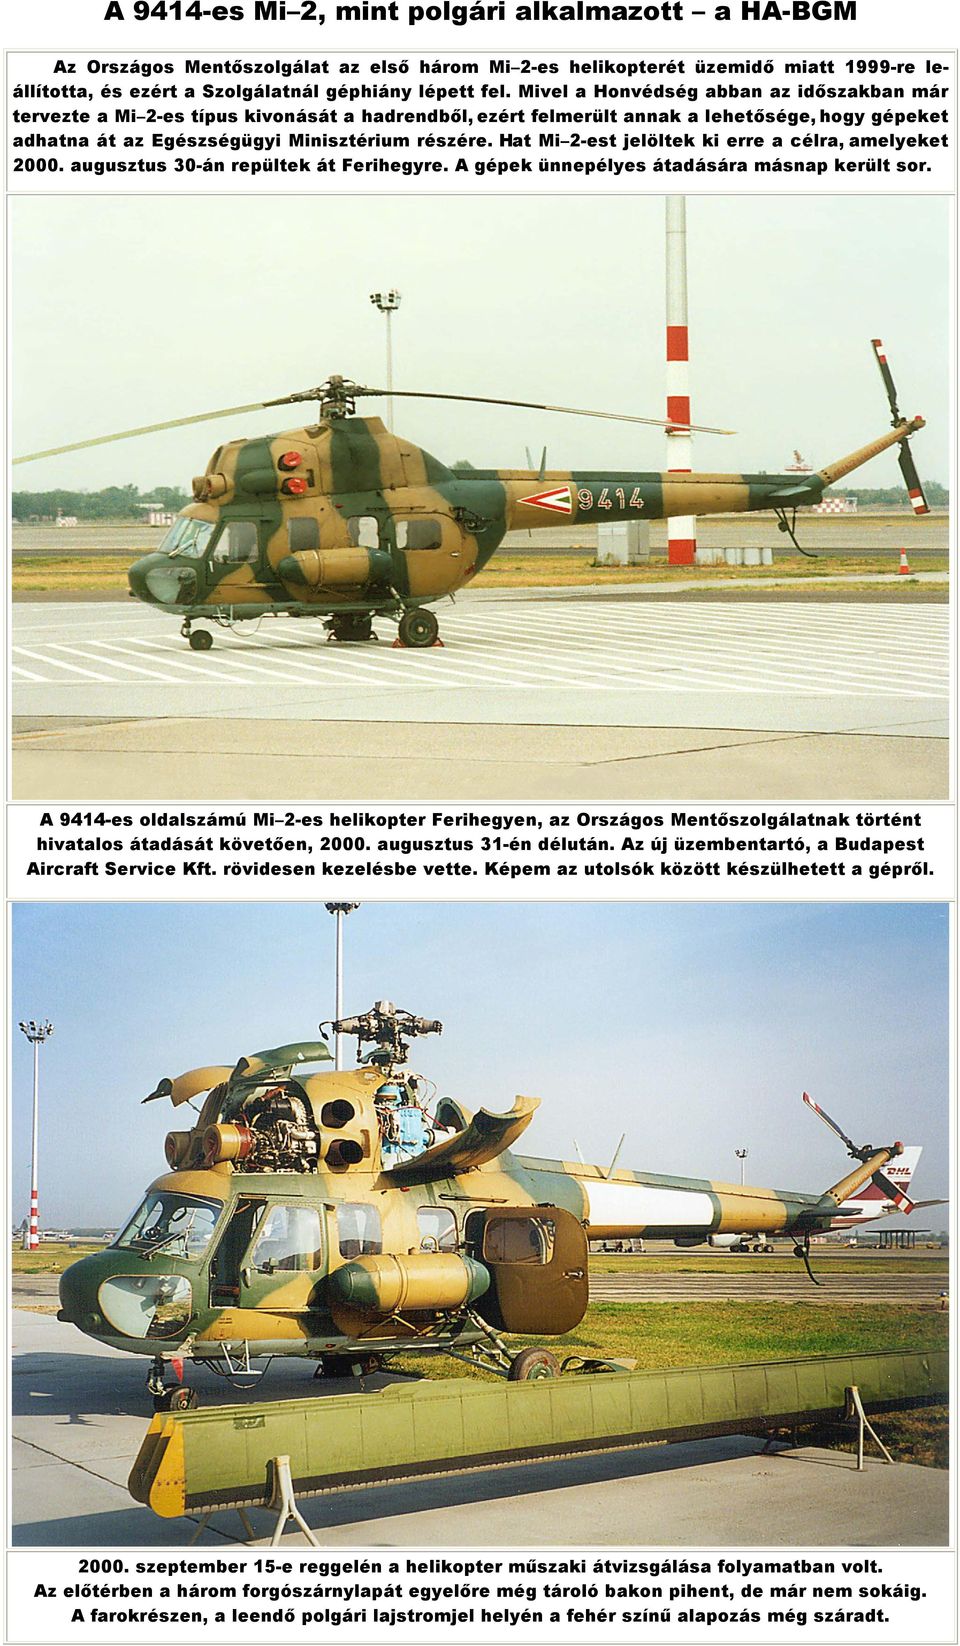 Hat Mi 2-est jelöltek ki erre a célra, amelyeket 2000. augusztus 30-án repültek át Ferihegyre. A gépek ünnepélyes átadására másnap került sor.